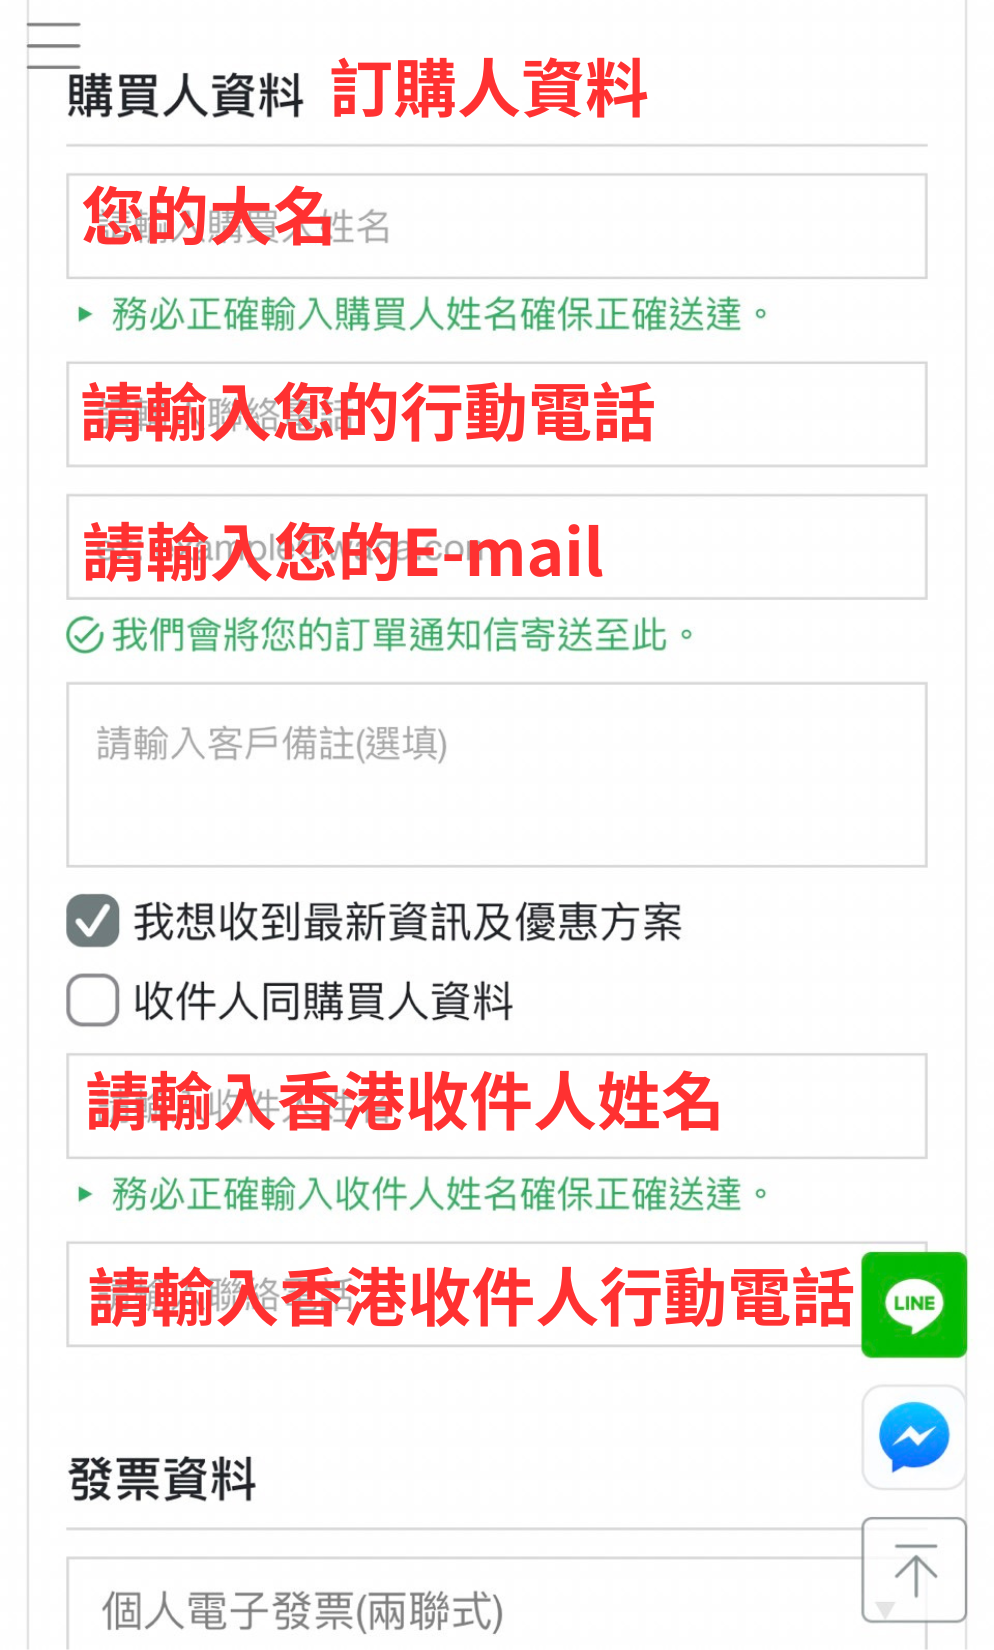 香港訂購人資料.png